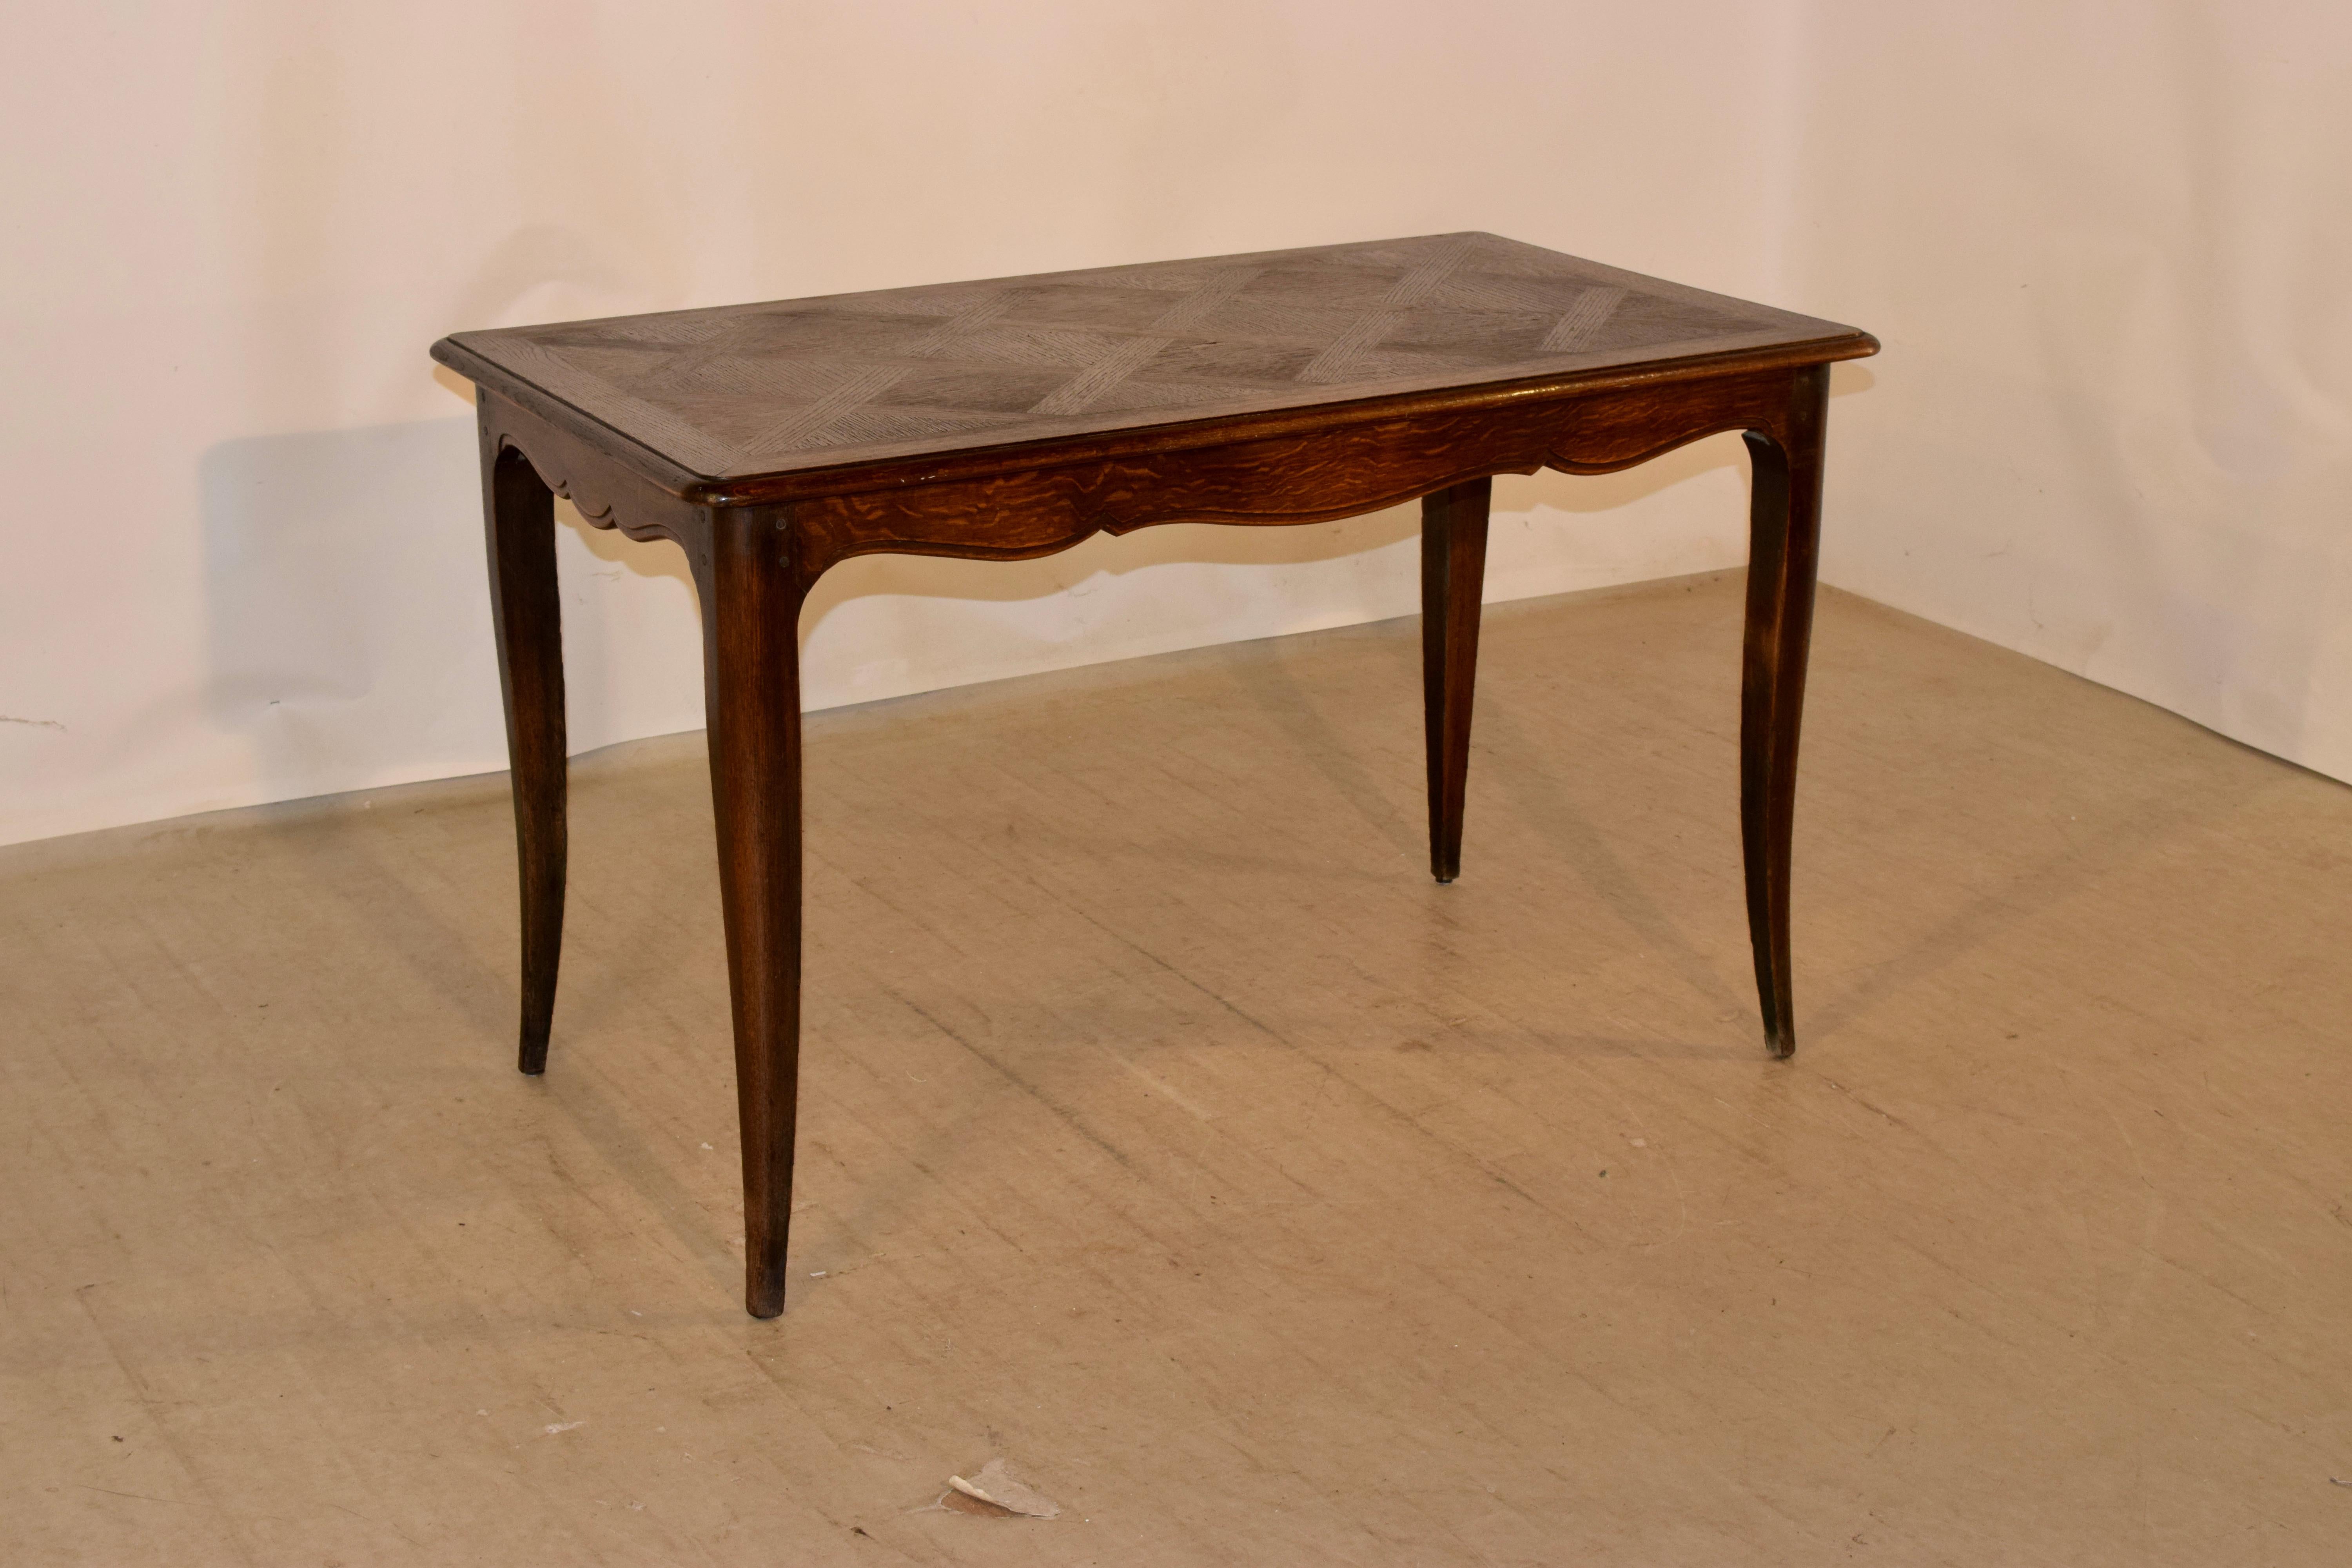 Tisch aus dem späten 19. Jahrhundert mit einer schönen gebänderten und abgeschrägten Kante, die eine zentrale Parkettplatte umgibt. Die Schürze ist gezackt und hat eine abgeschrägte Kante. Der Tisch steht auf gespreizten Cabriole-Beinen. Die Schürze